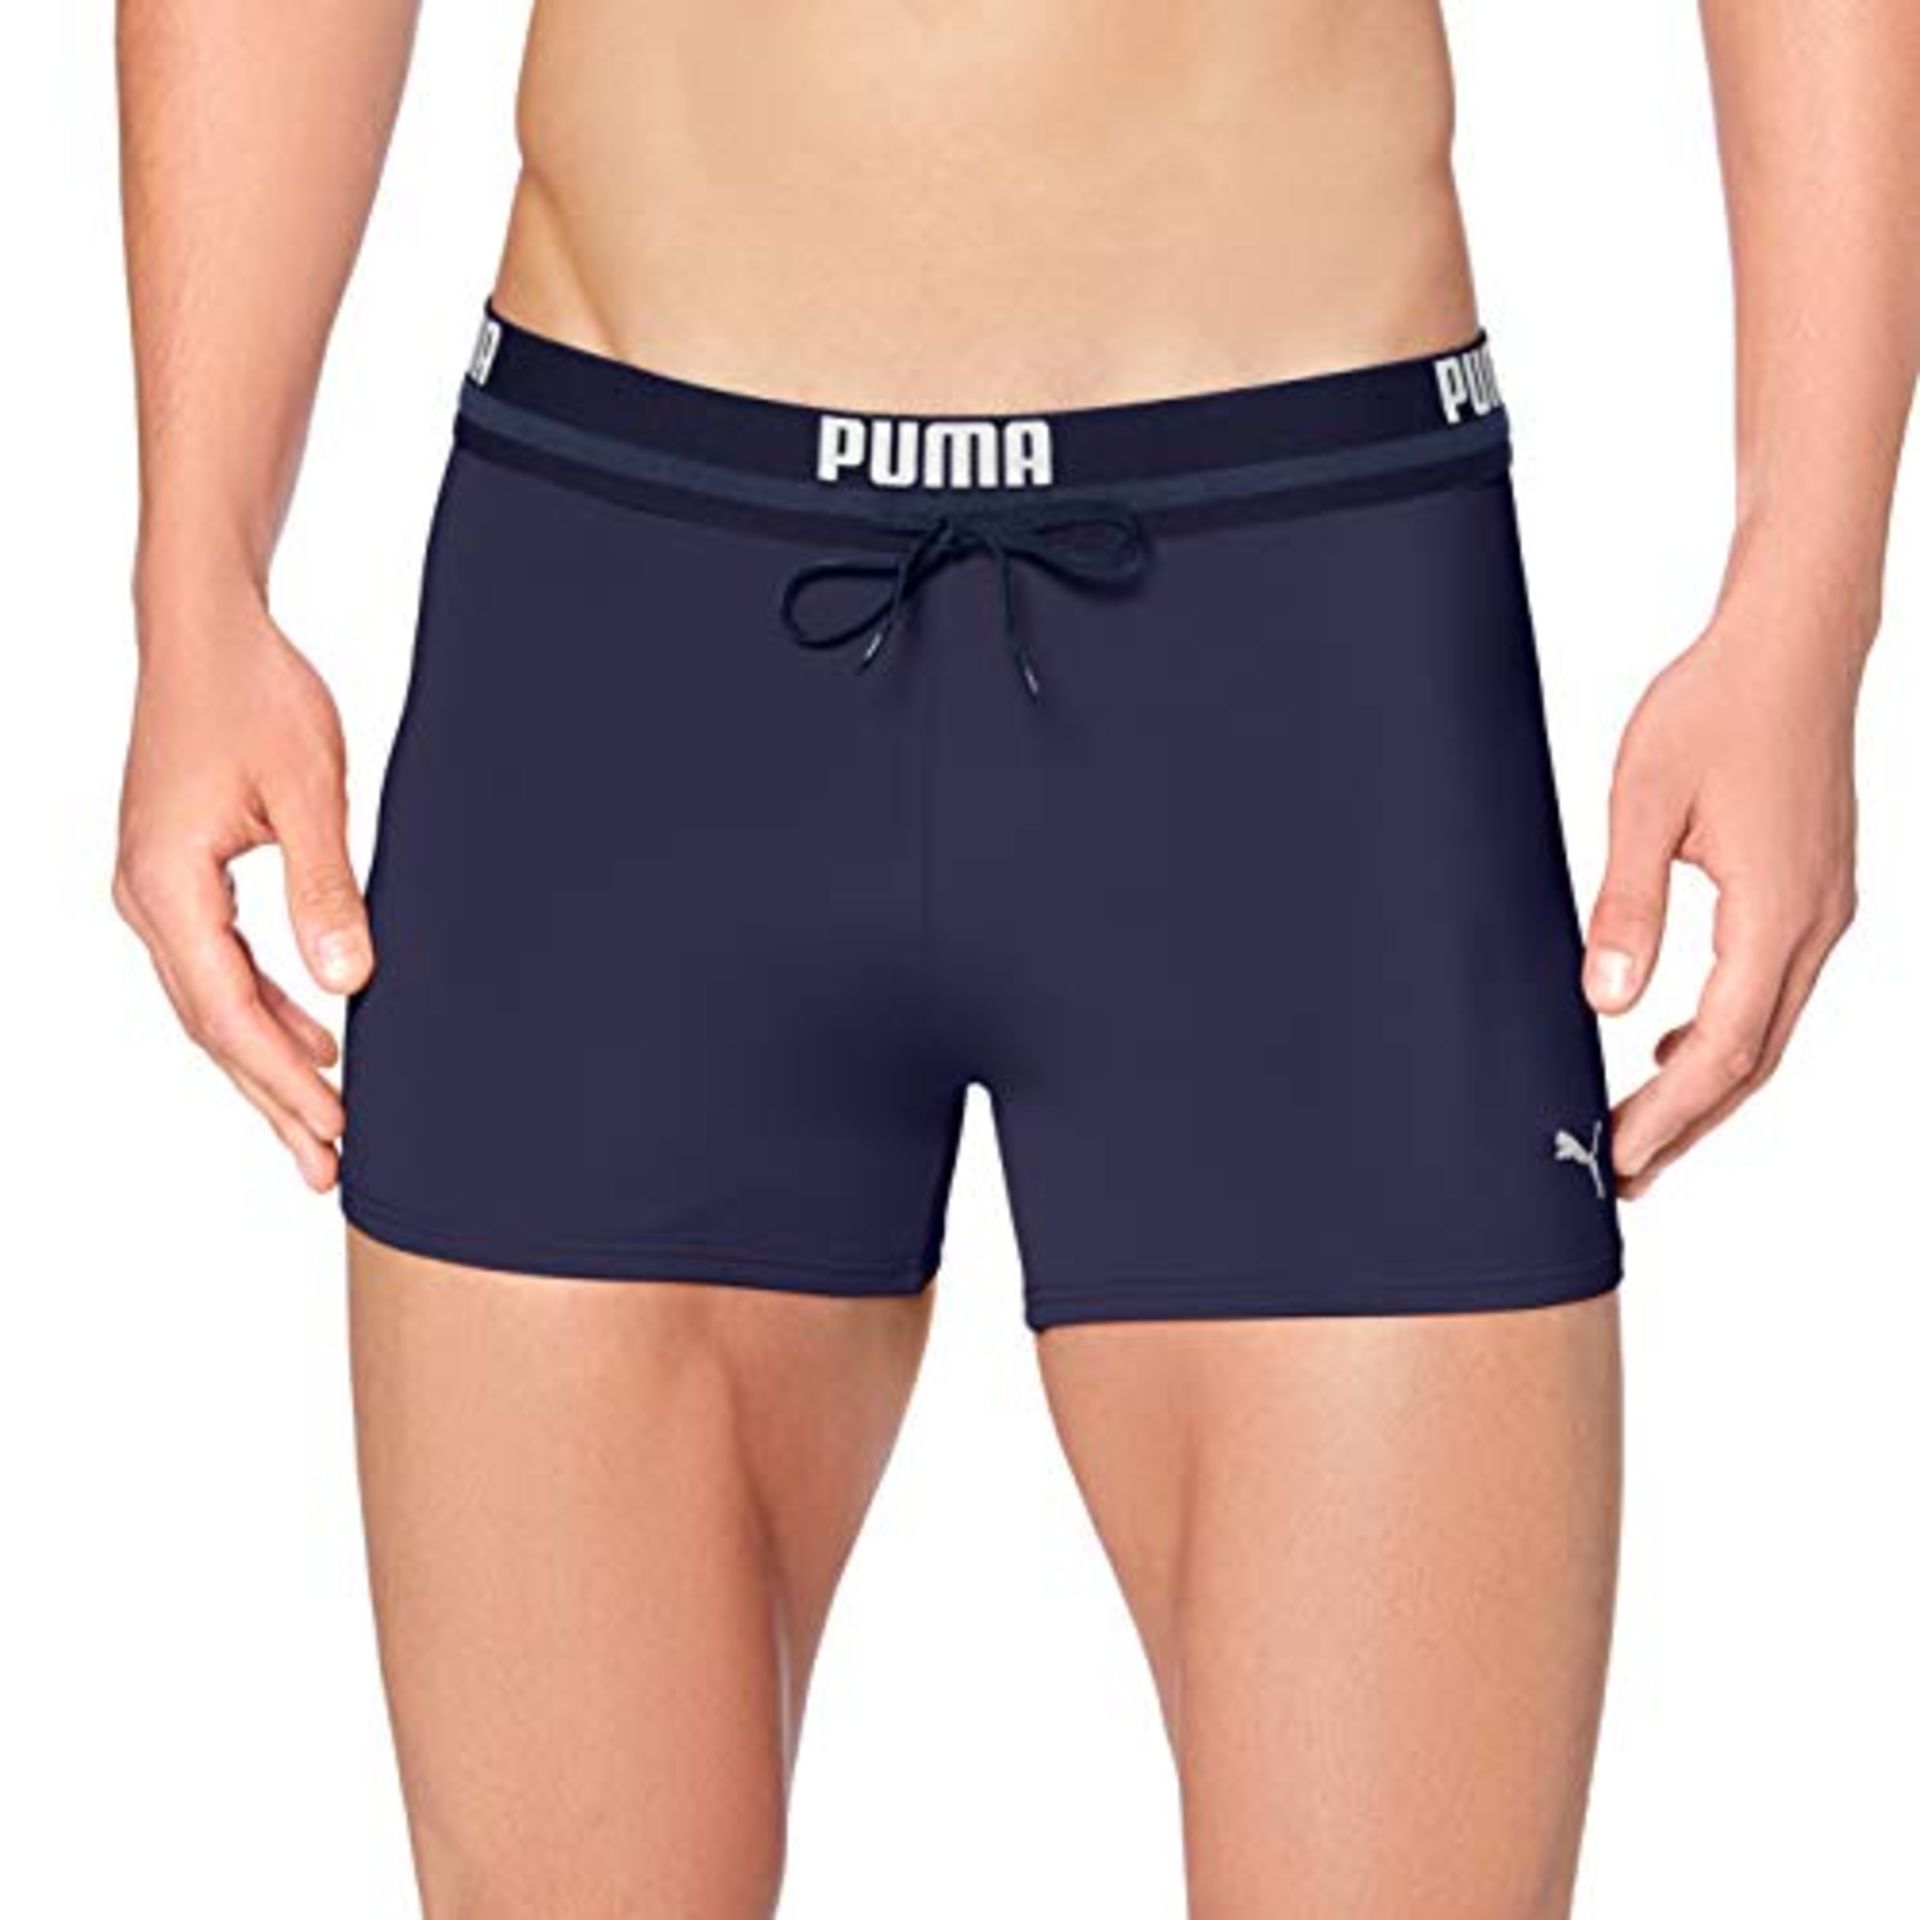 PUMA Herren Puma Logo Men's Swimming Swim Trunks, Navy, XL EU